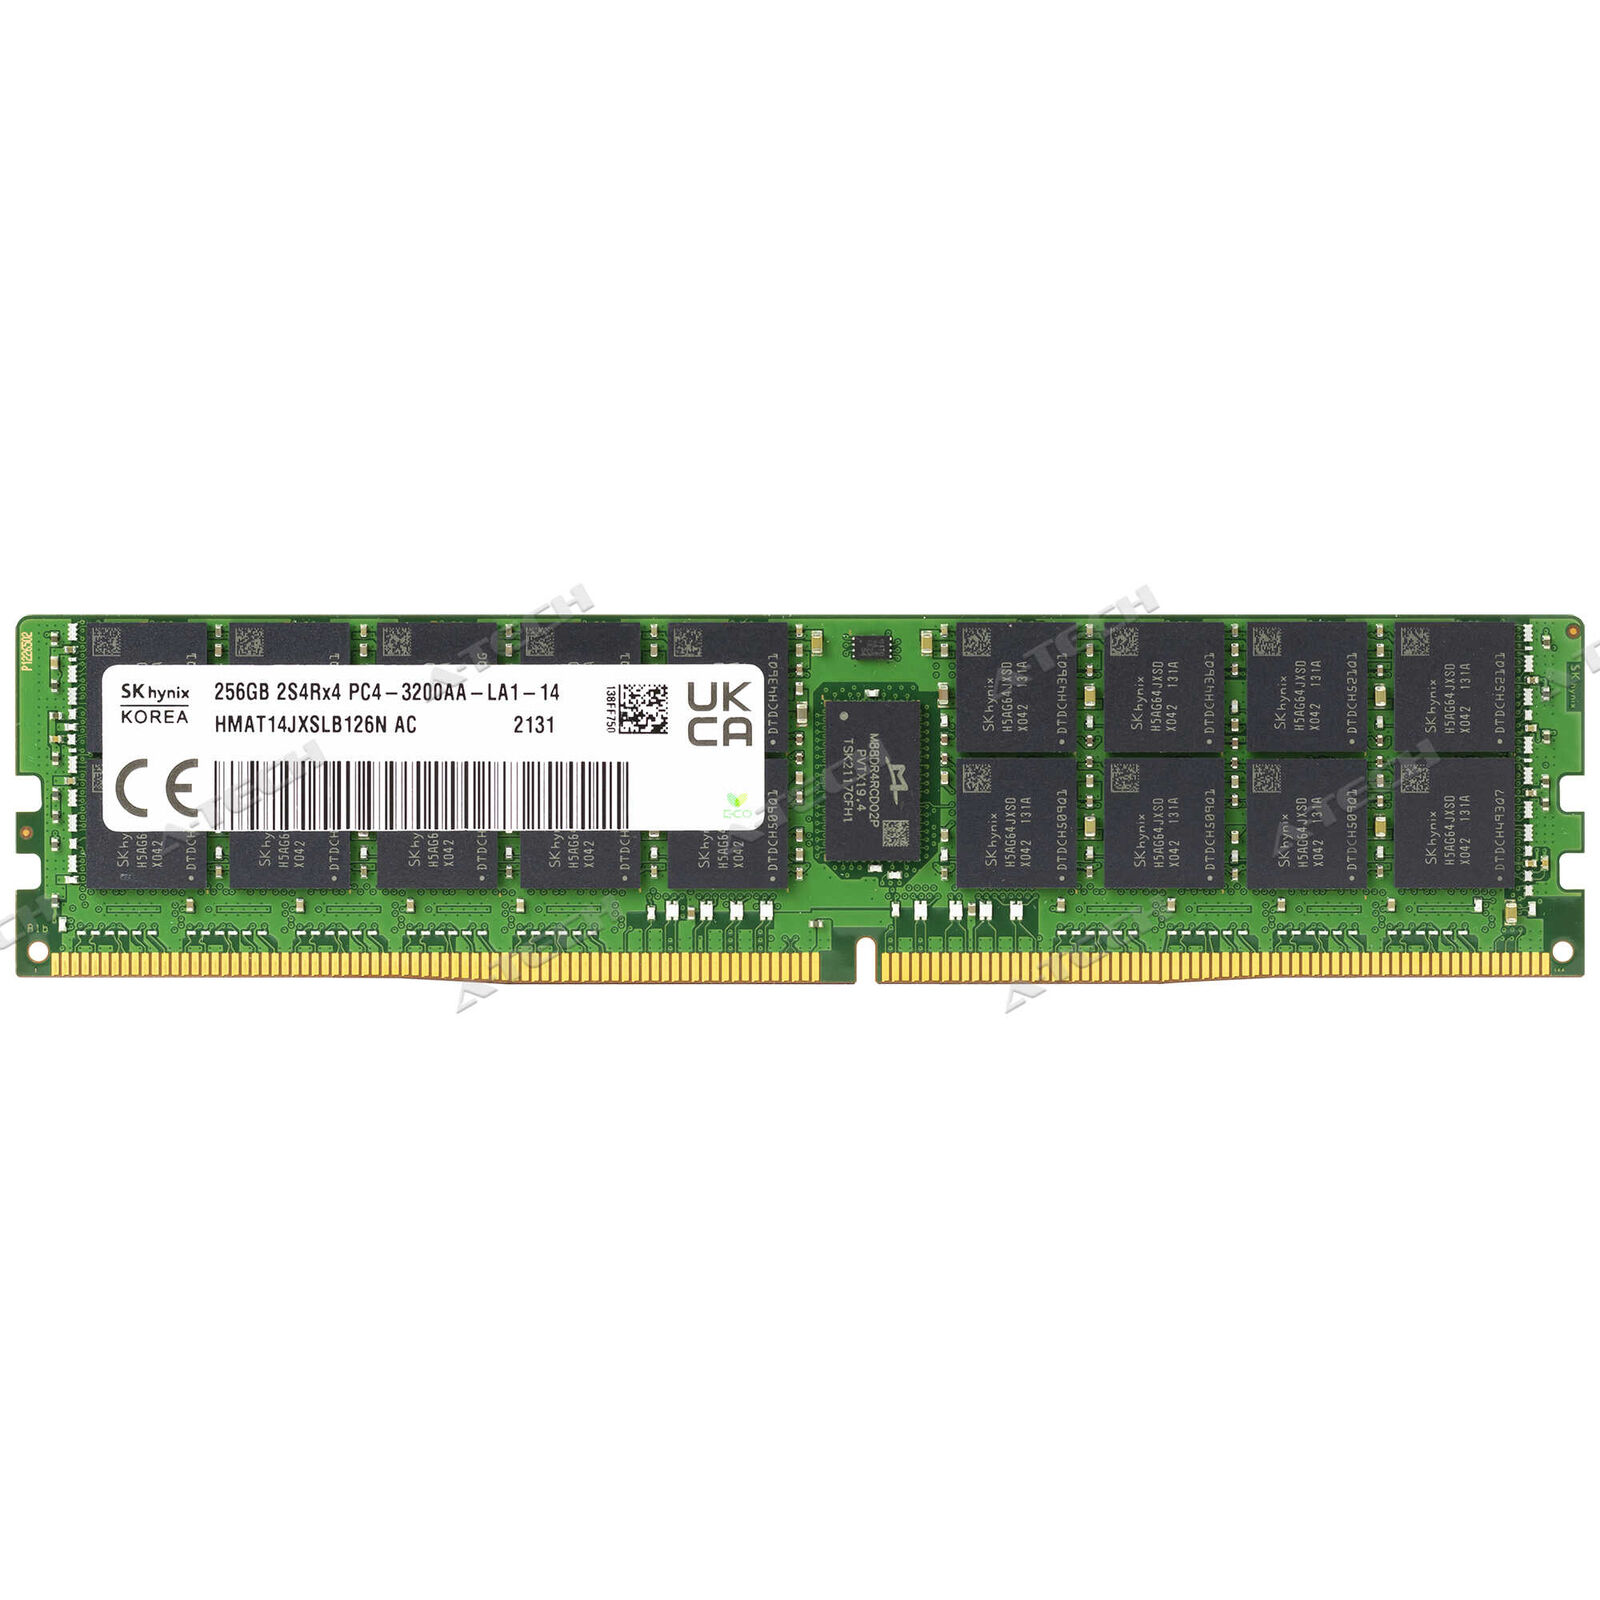 Hynix 256GB 2S4Rx4 DDR4 3200MHz LRDIMM PC4-25600 Server Memory RAM (HMAT14JXSLB)